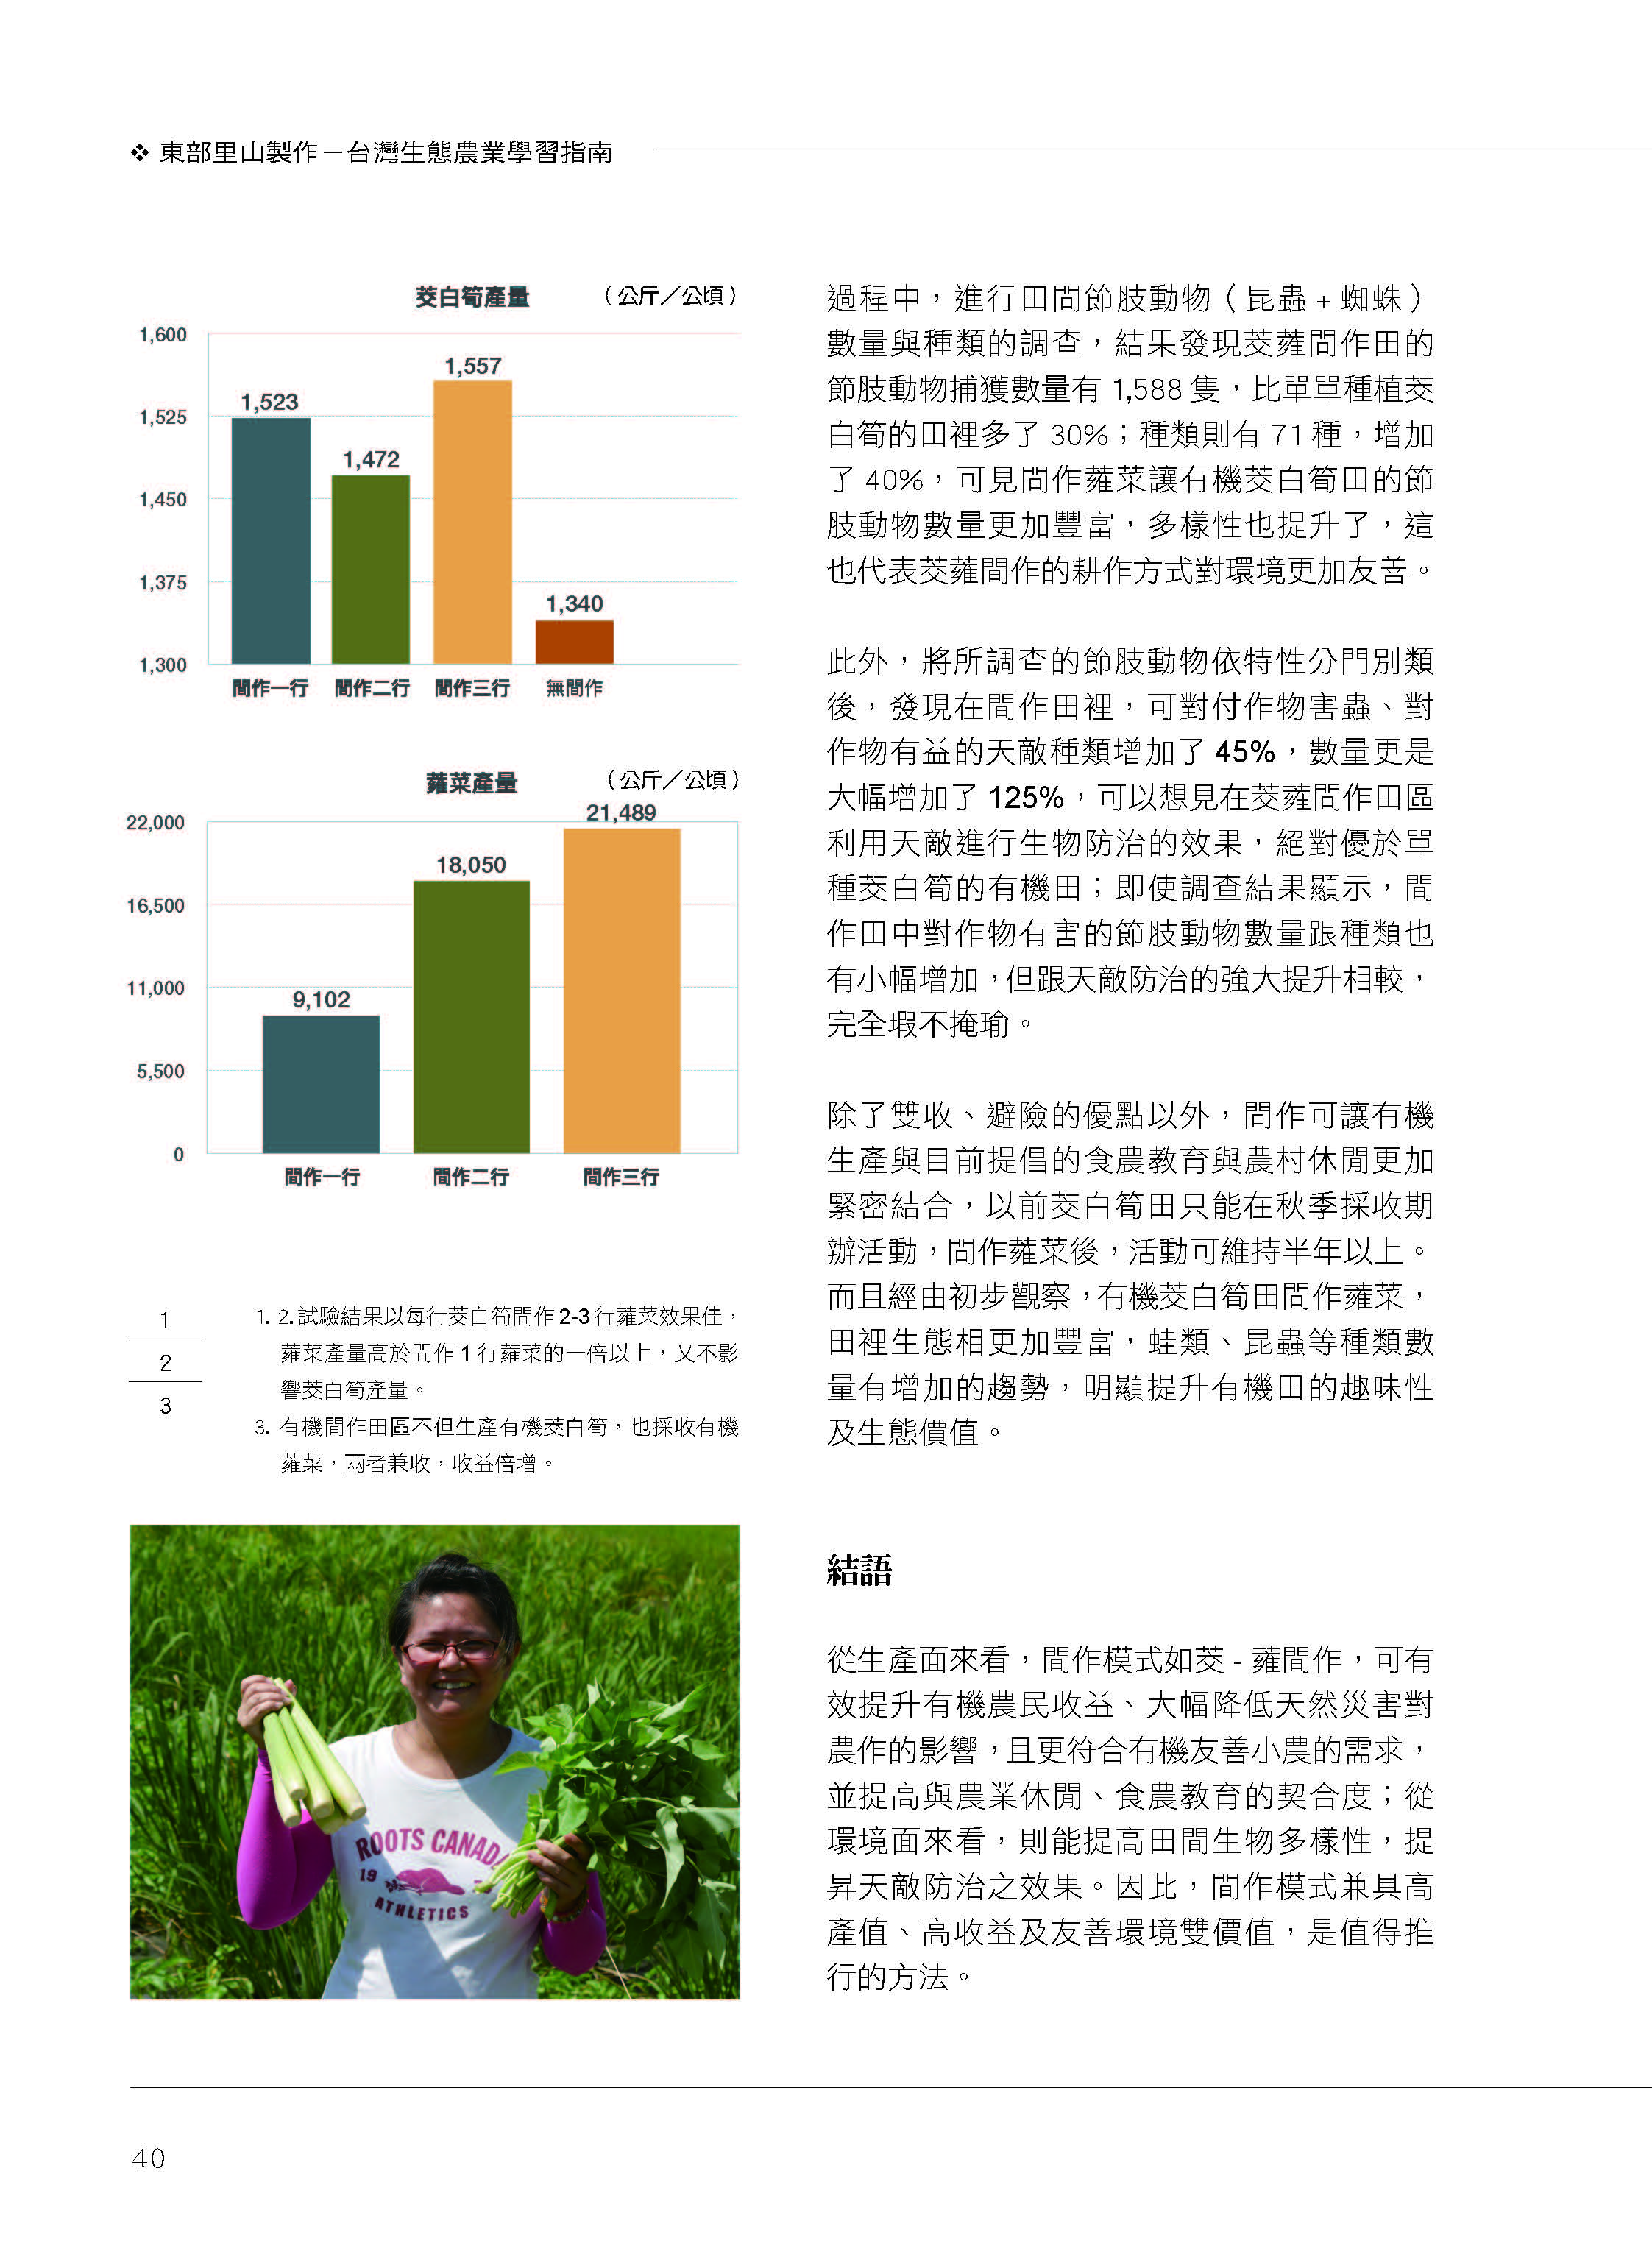 里山台灣－專欄3－研究與現場:多元收益與友善環境之間作生產模式-5